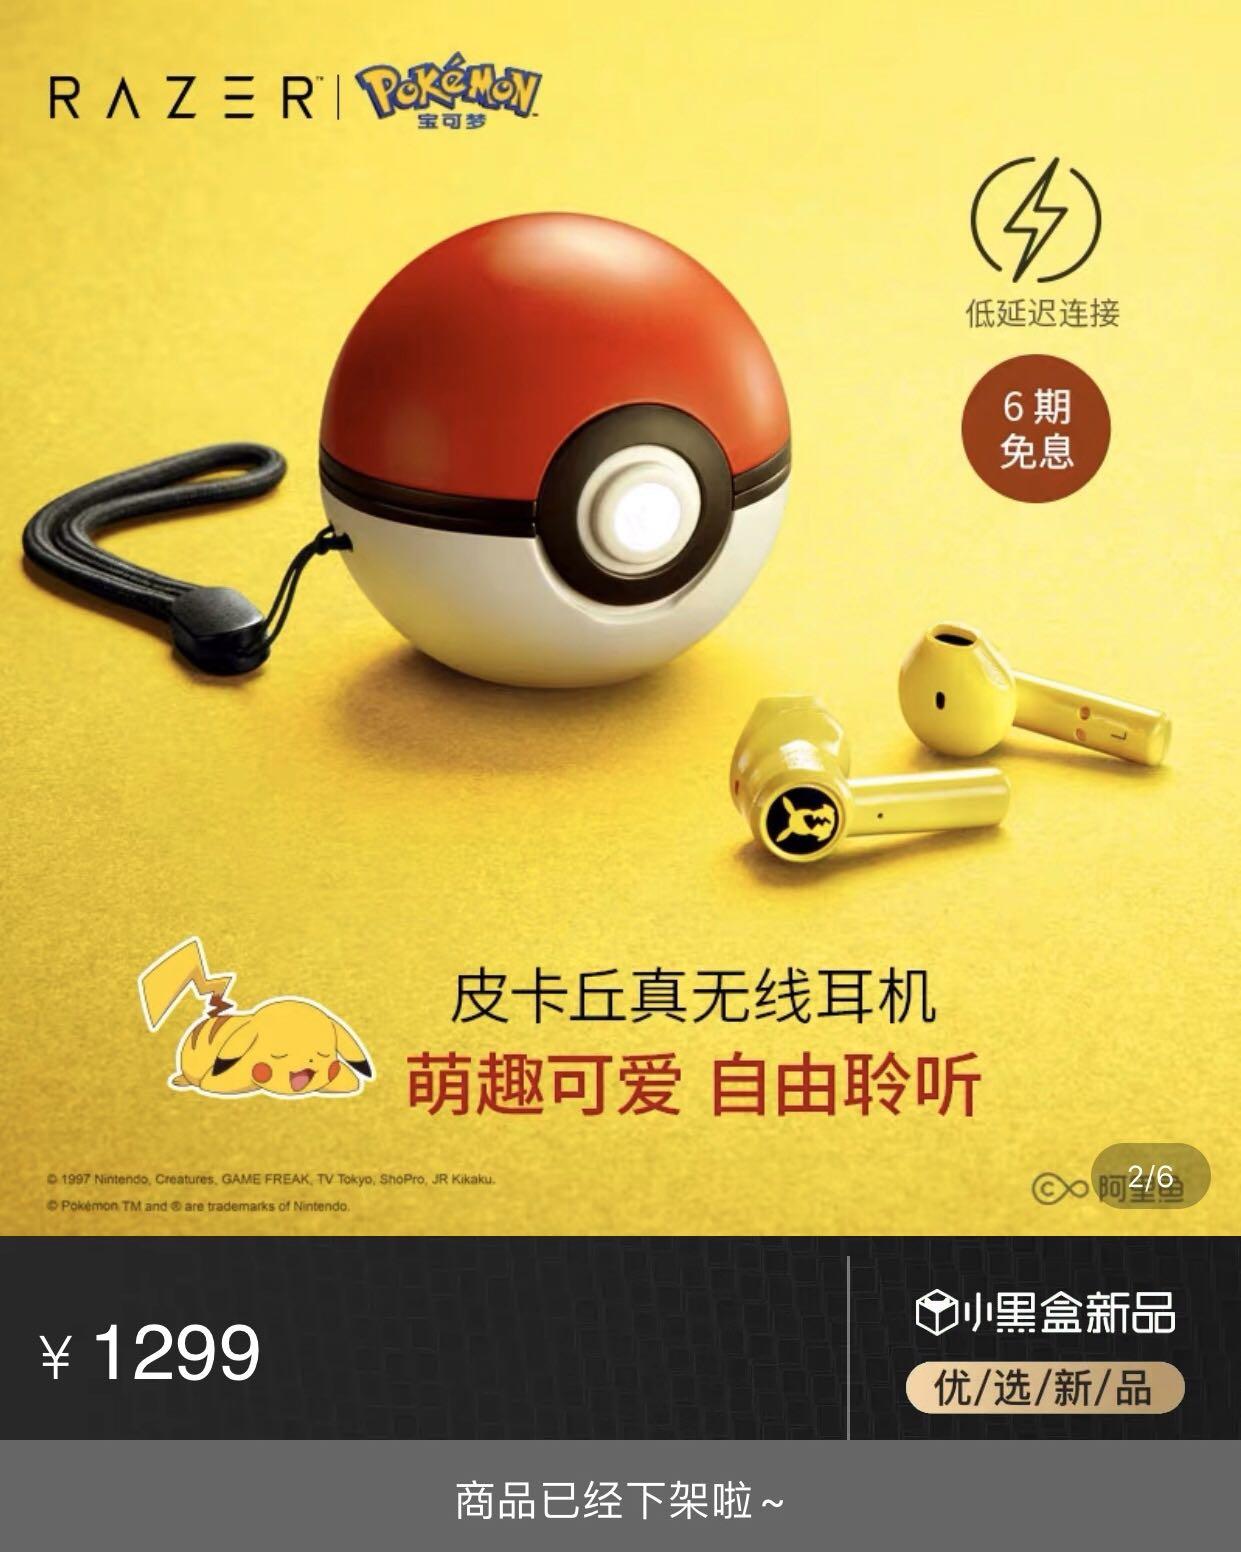 現貨 Razer 雷蛇pokemon 皮卡丘比卡超真無線耳機精靈球充電盒 電子產品 其他 Carousell